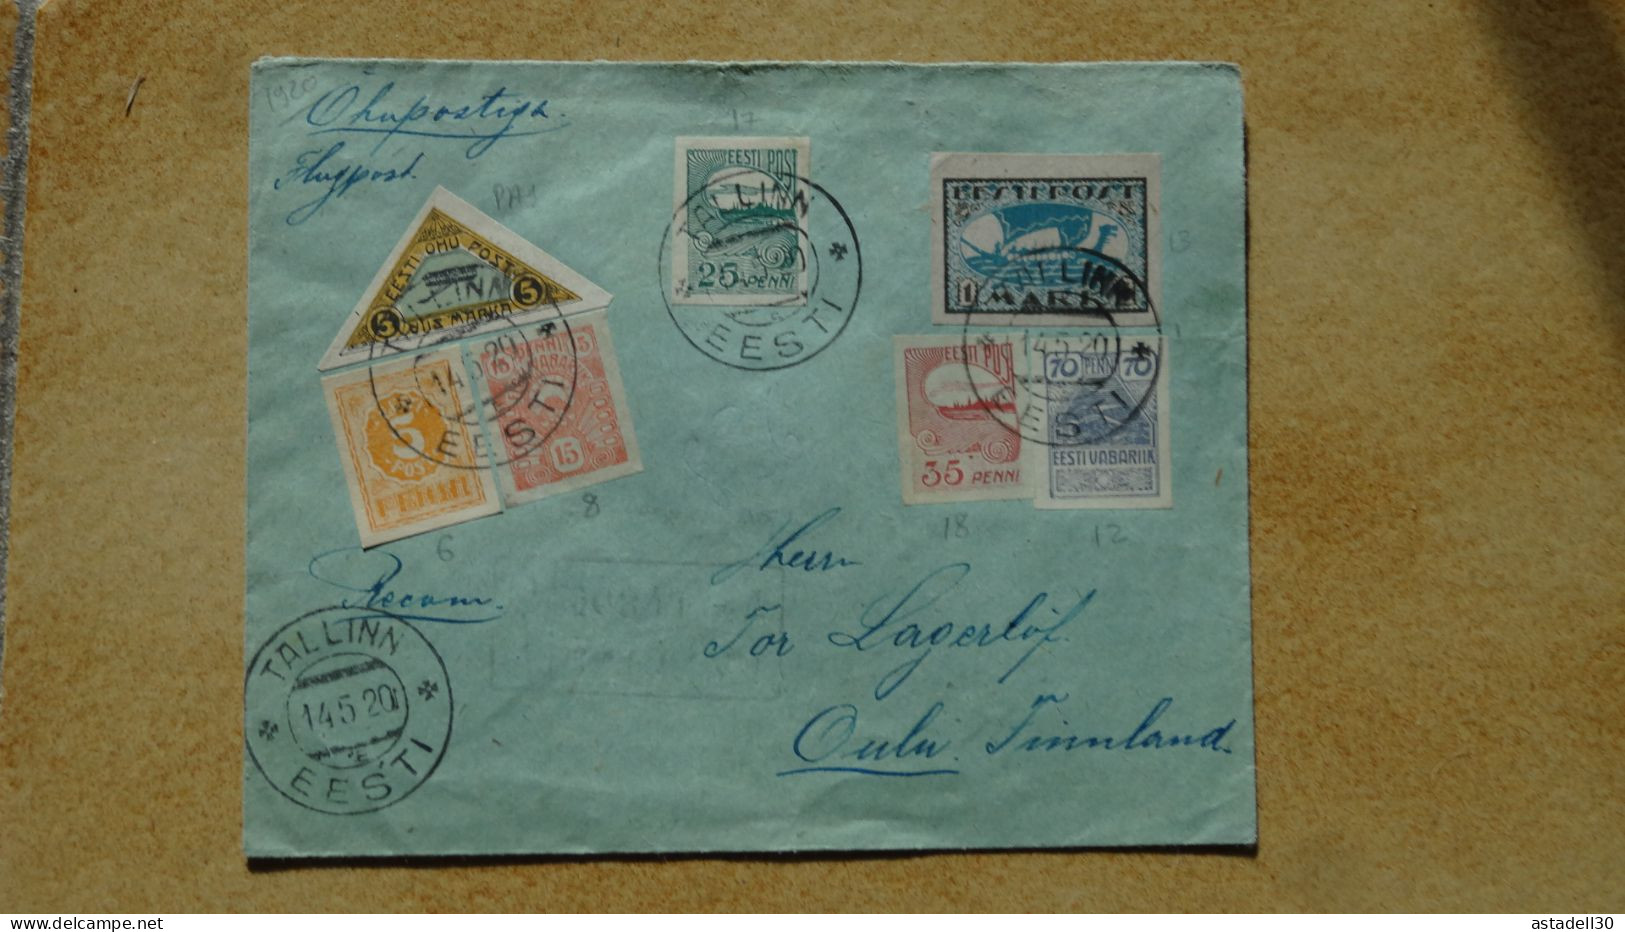 Enveloppe Recommandée, Avion, ESTONIE, Tallinn - 1920  ......... Boite1 ...... 240424-151 - Estonie